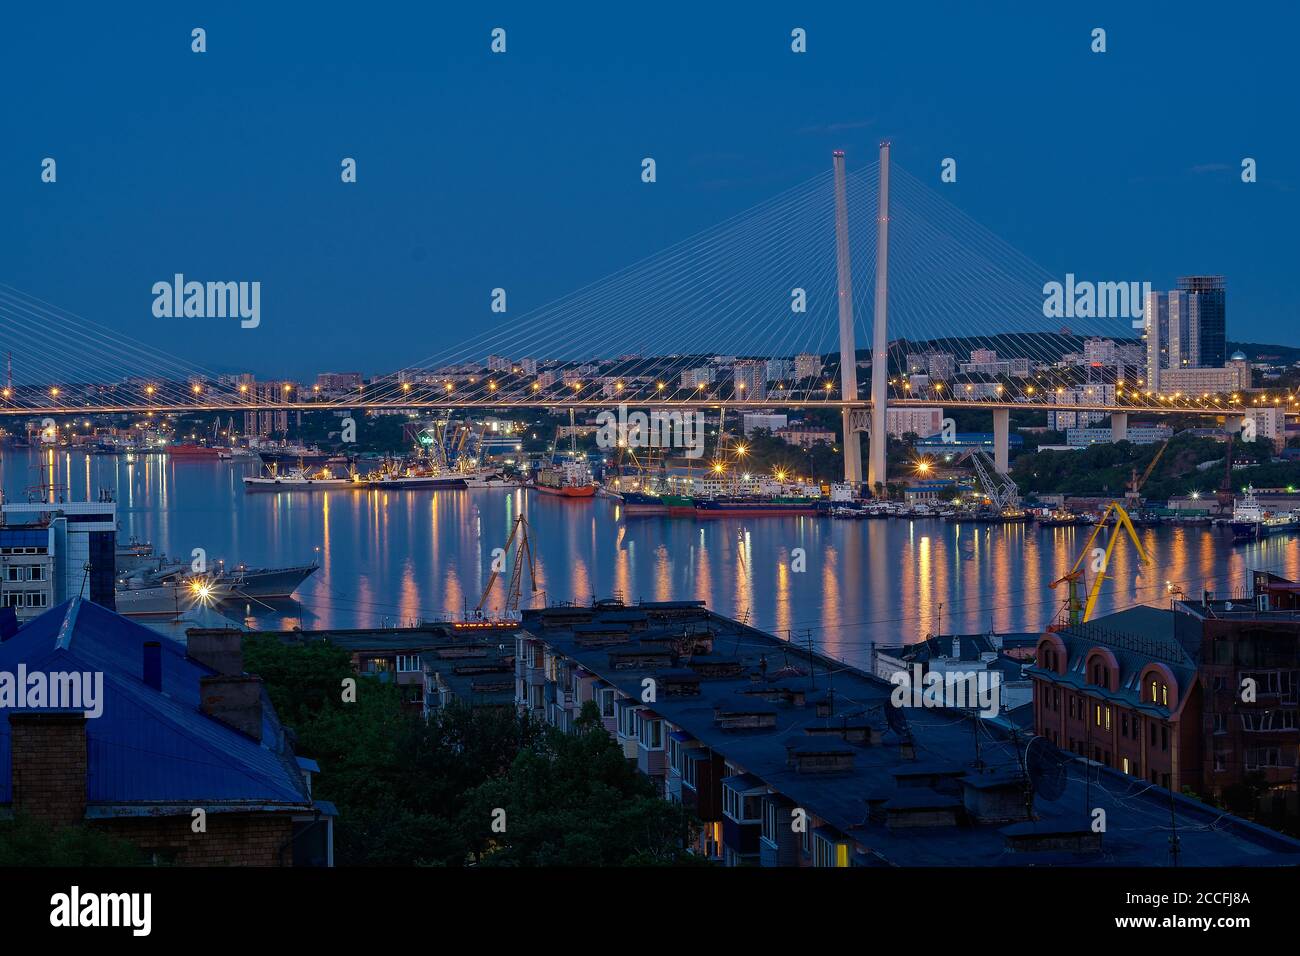 Wladiwostok, Russland - 11. Jun 2020: Nachtansicht der Stadt Wladiwostok. Goldene Brücke in Wladiwostok bei Nacht. Stockfoto